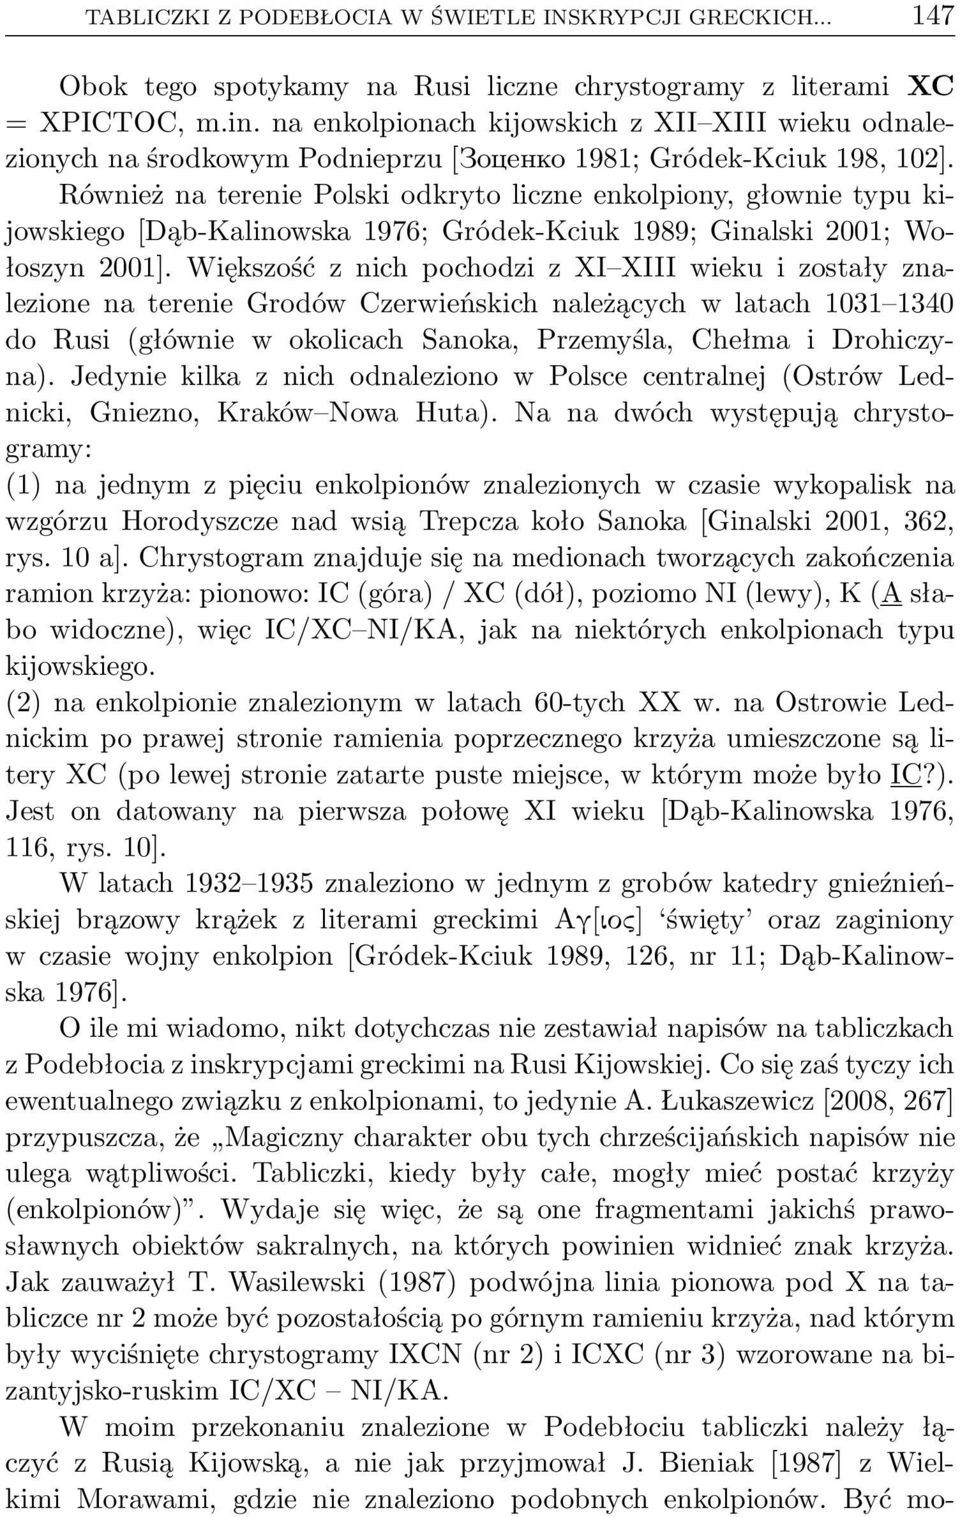 Również na terenie Polski odkryto liczne enkolpiony, głownie typu kijowskiego[dąb-kalinowska 1976; Gródek-Kciuk 1989; Ginalski 2001; Wołoszyn 2001].